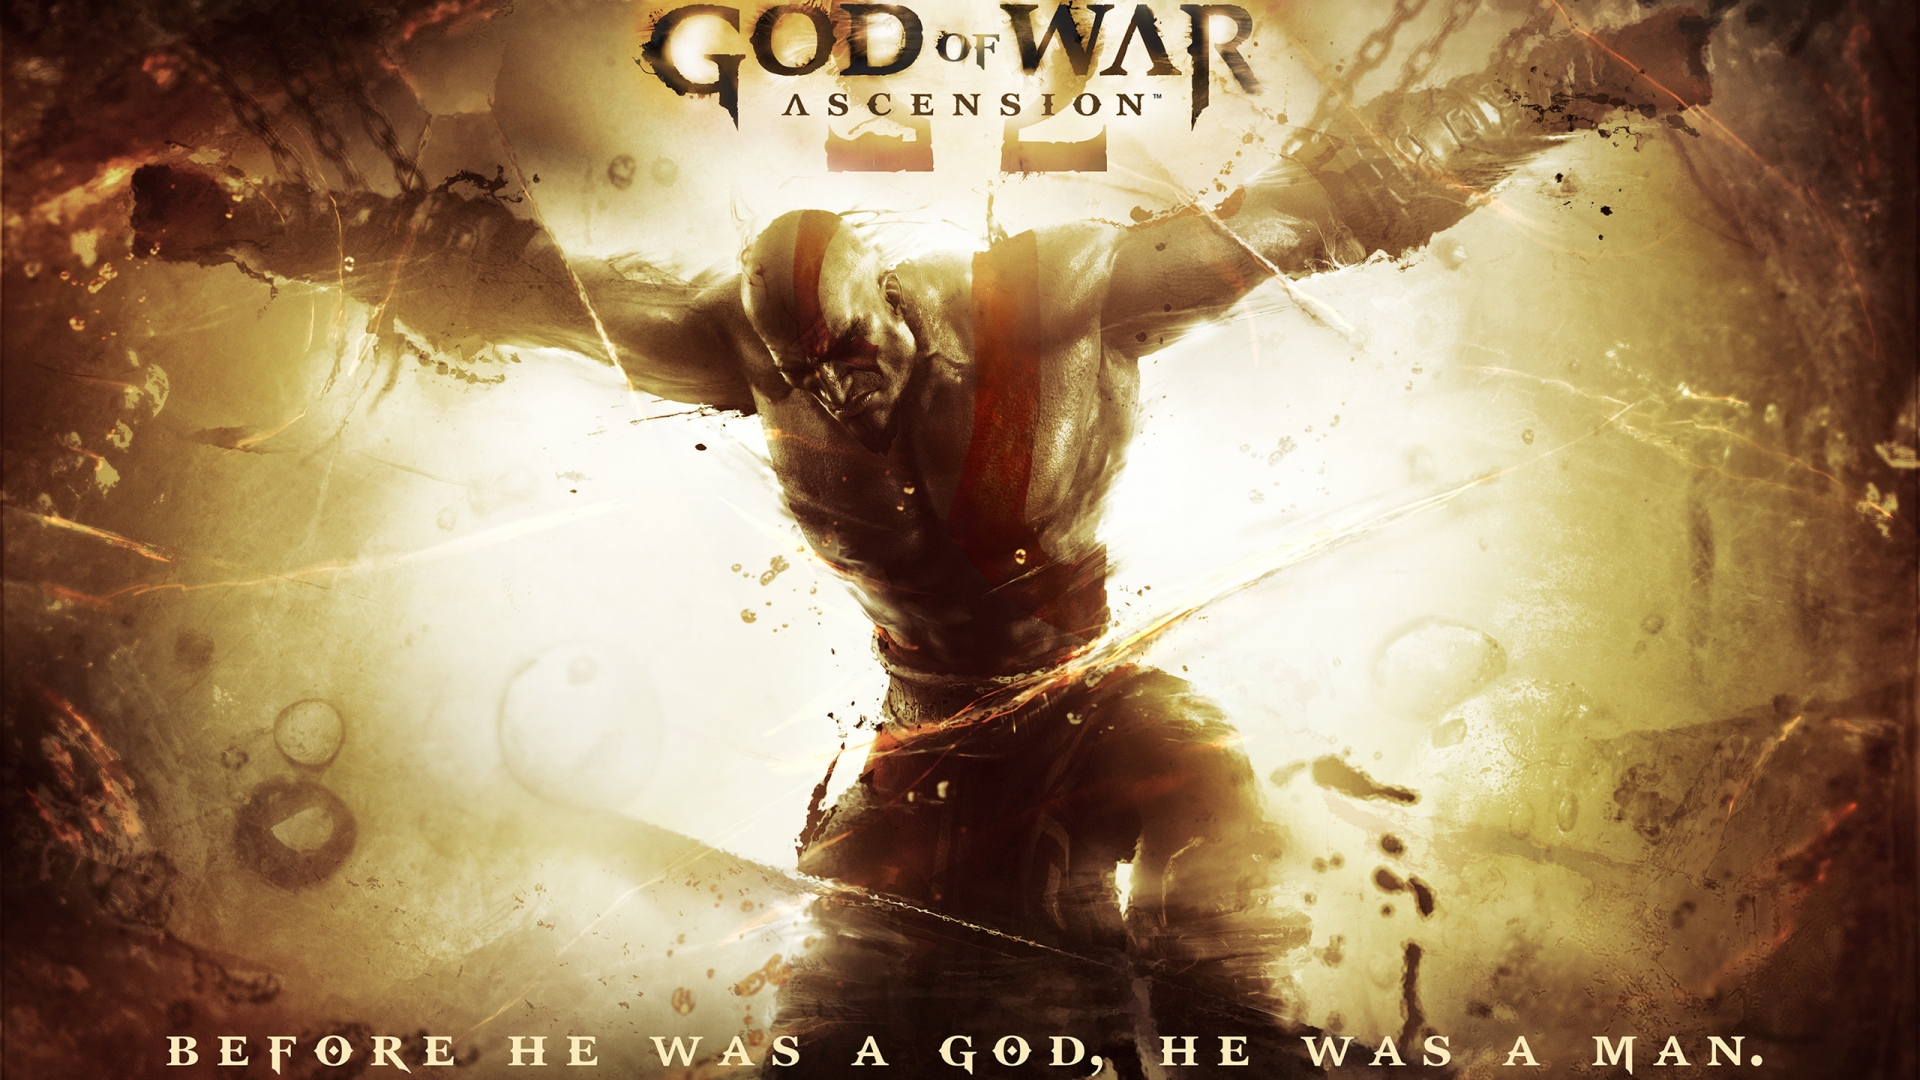 God of War Ascension 2013 for 1920 x 1080 HDTV 1080p resolution